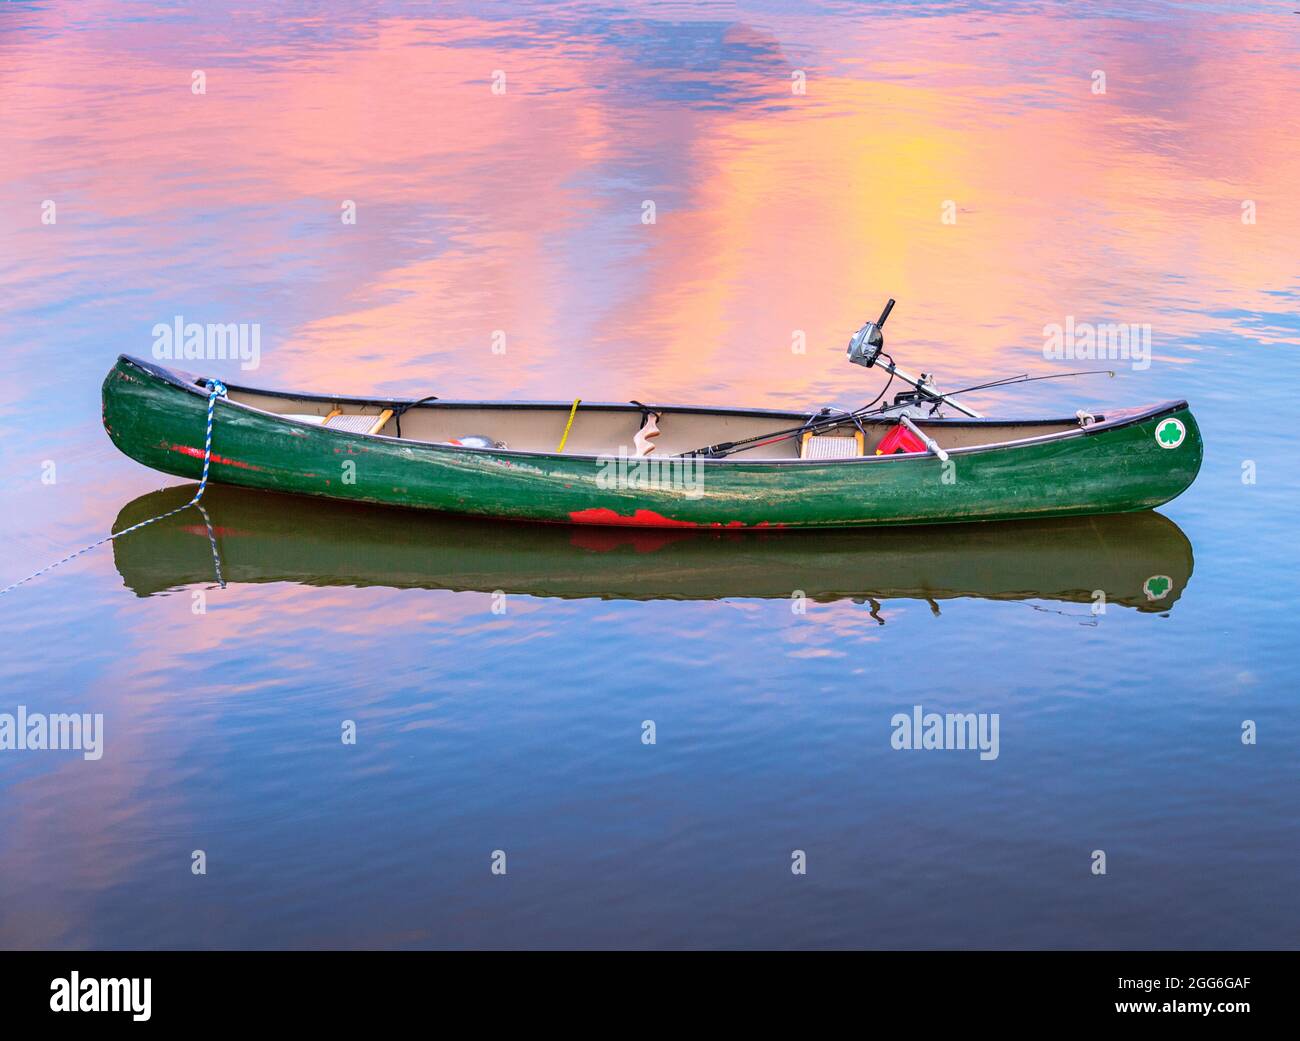 Canoa de pesca amarrada con motor eléctrico fuera borda Fotografía de stock  - Alamy